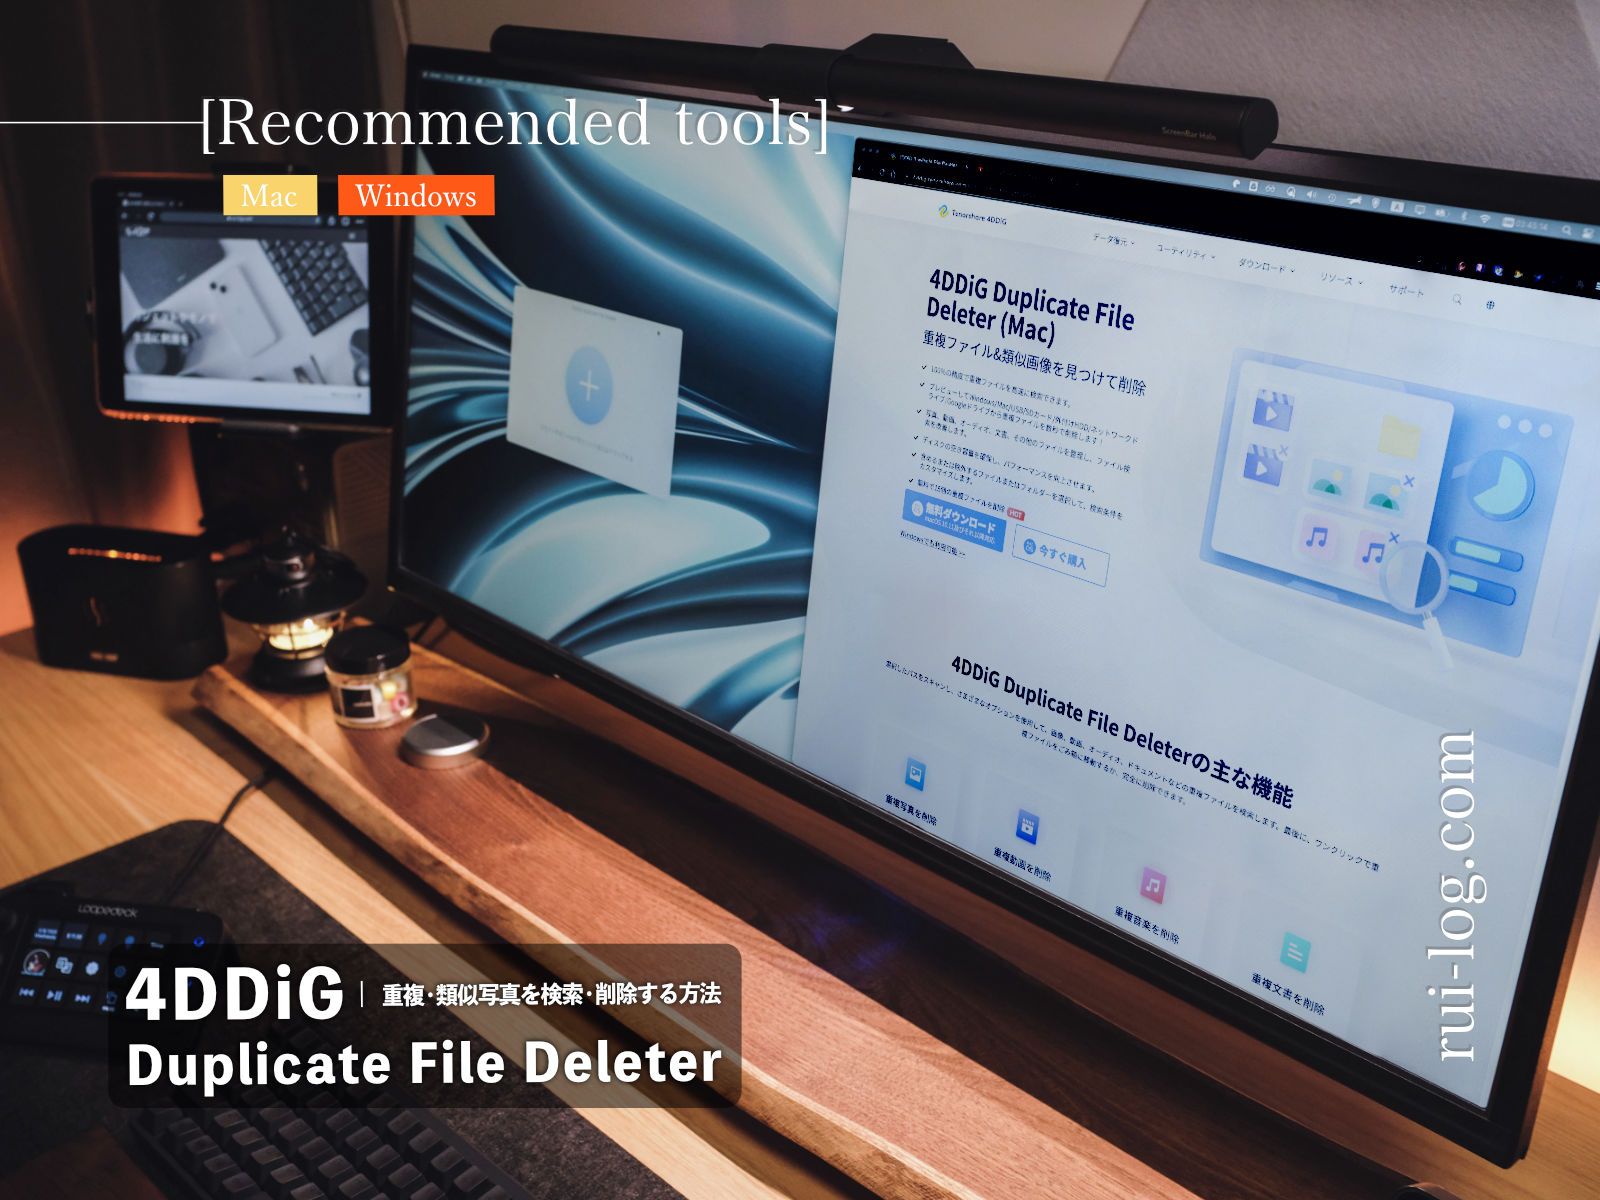 Macで重複・類似写真を検索・削除する方法【4DDiG Duplicate File Deleter（Mac）】レビュー